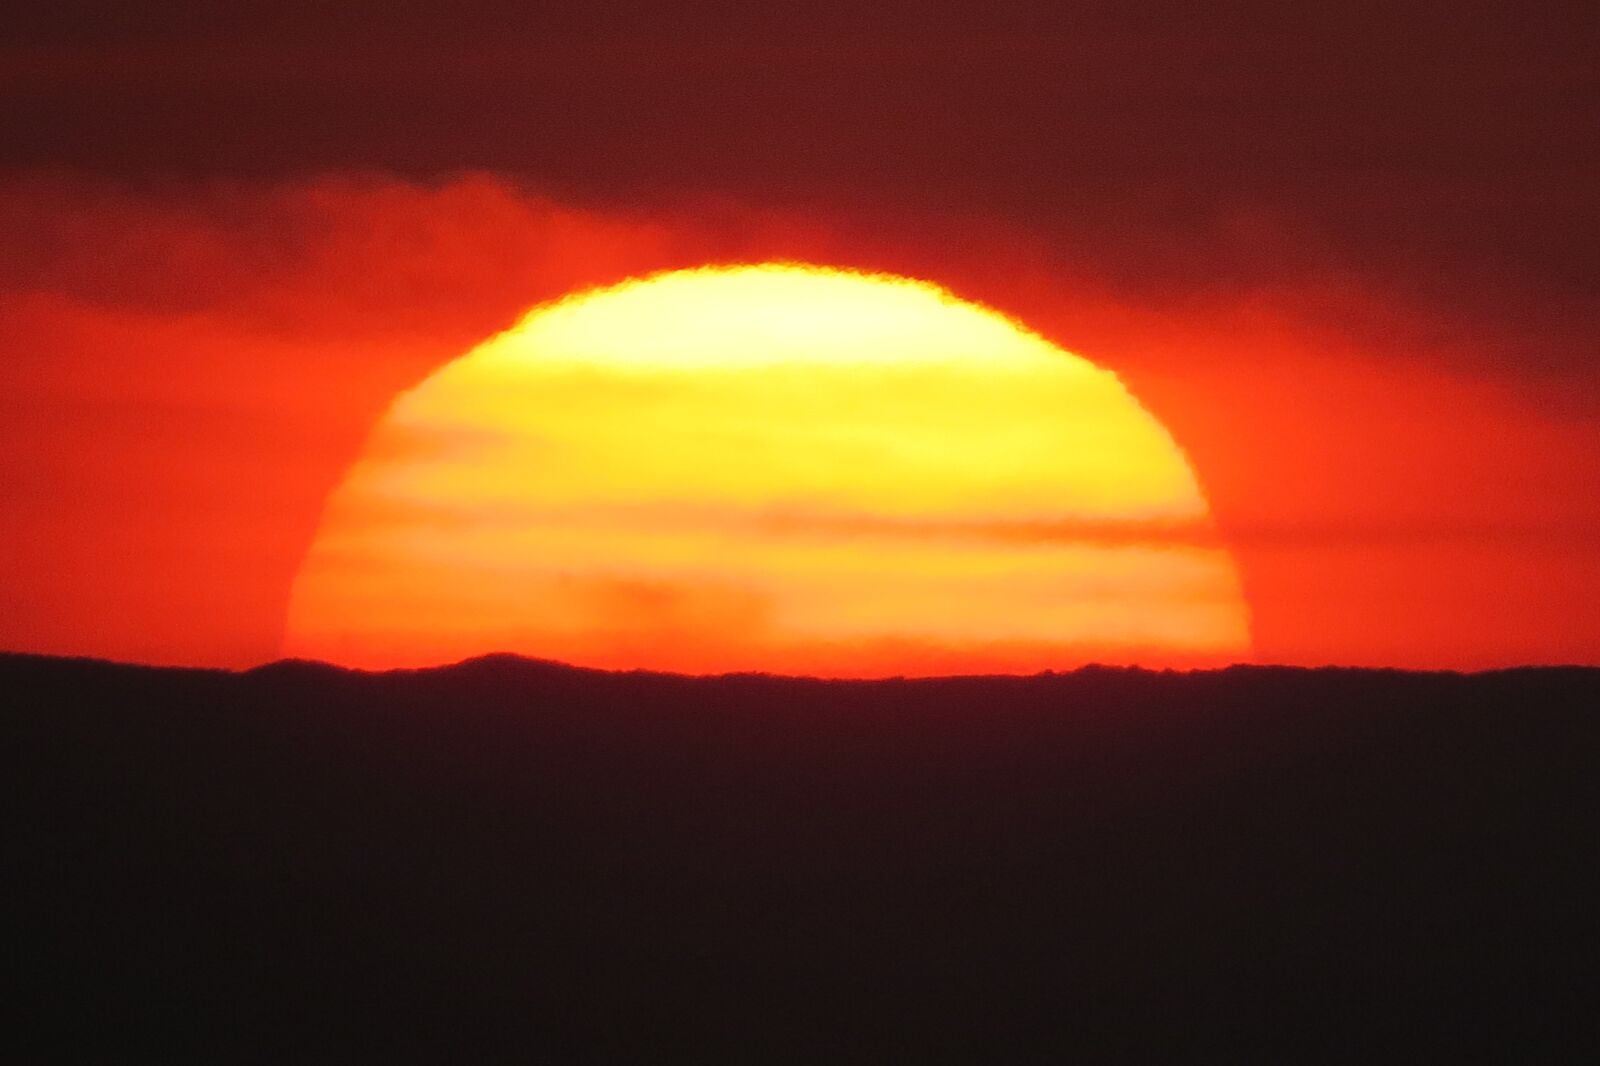 Canon PowerShot SX50 HS sample photo. Sunset, sun, dawn photography